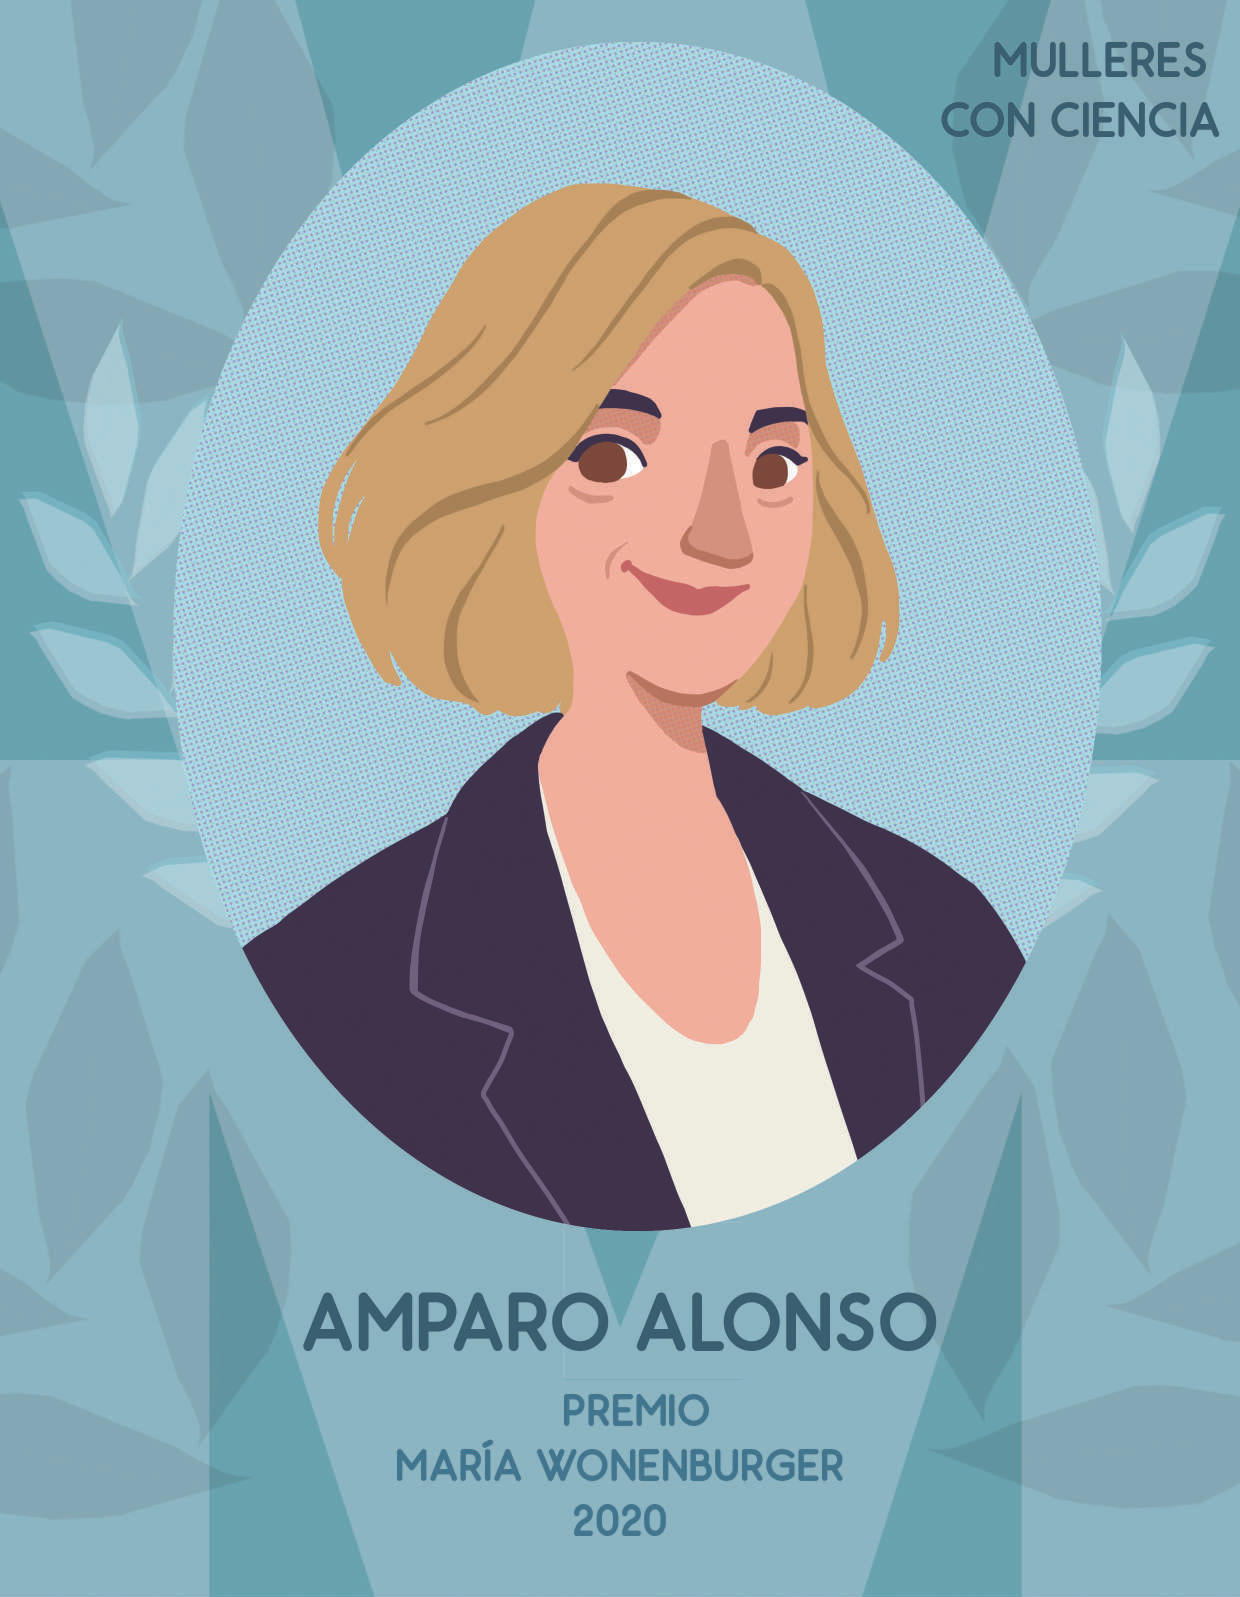 Amparo Alonso, Mulleres con Ciencia